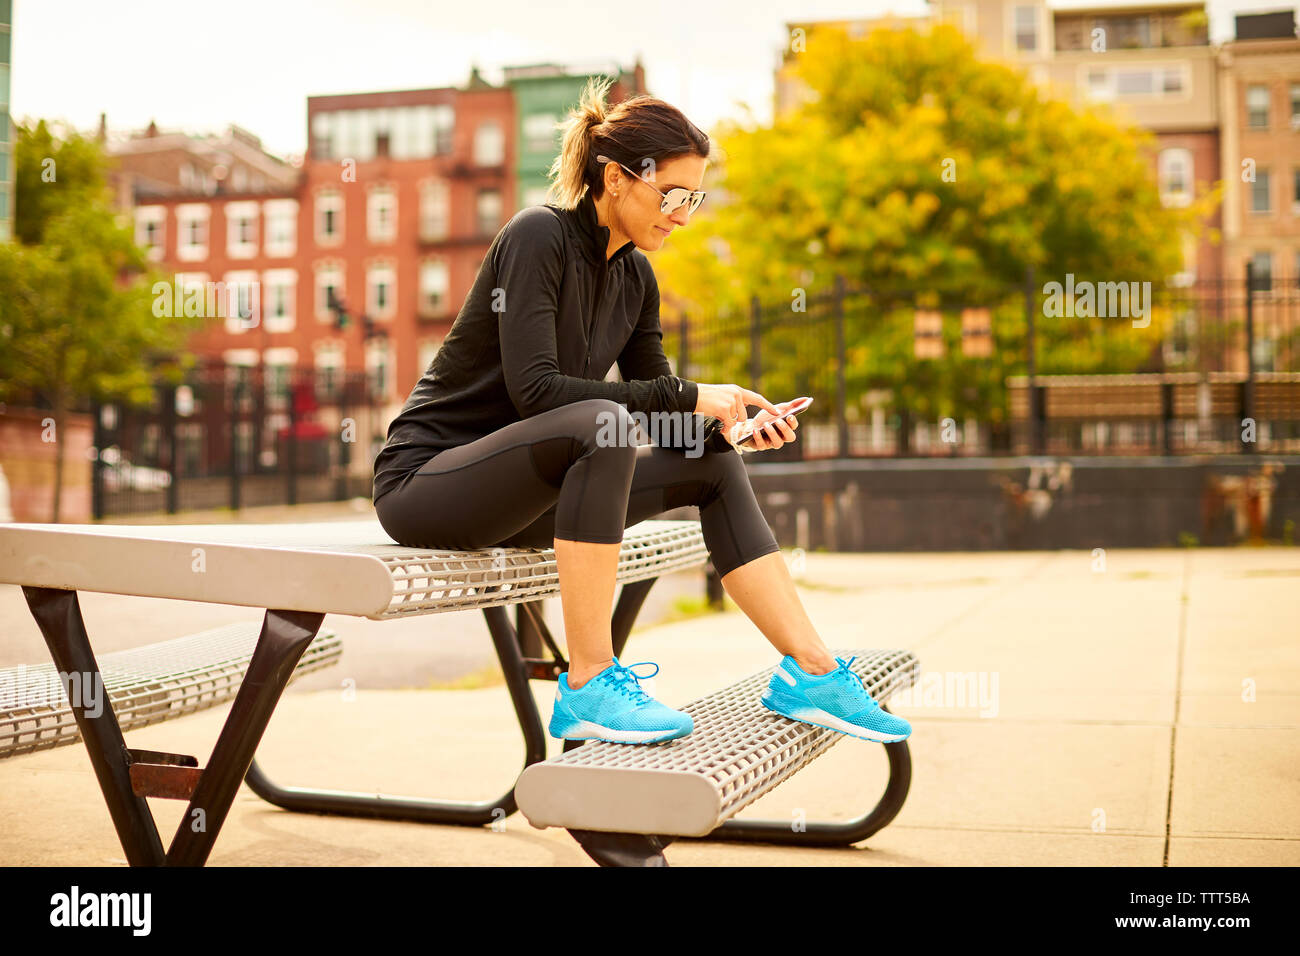 Eine athletische Frau sms beim Sitzen auf einem Picknicktisch in einem Park. Stockfoto